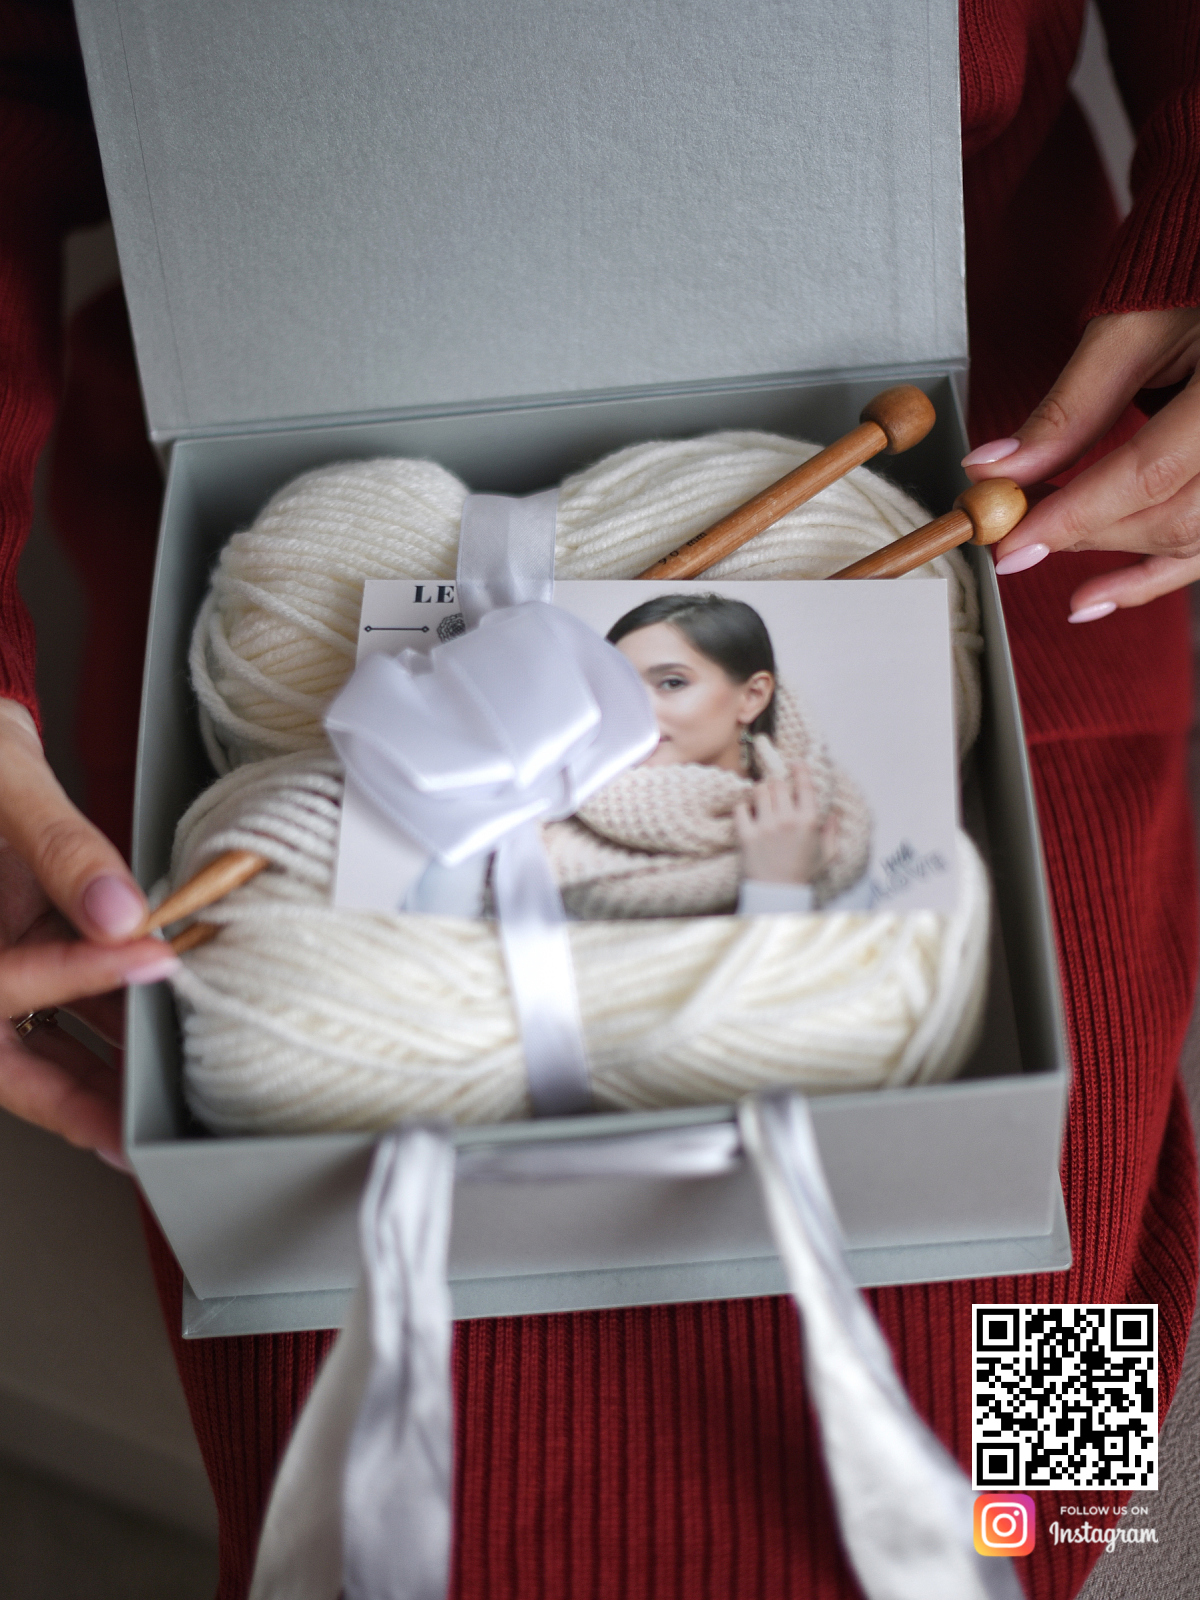 На второй фотографии показано из чего состоит подарочный набор для вязания бежевого шарфа в интернет-магазине Shapar, бренда трикотажа и связанной одежды ручной работы.